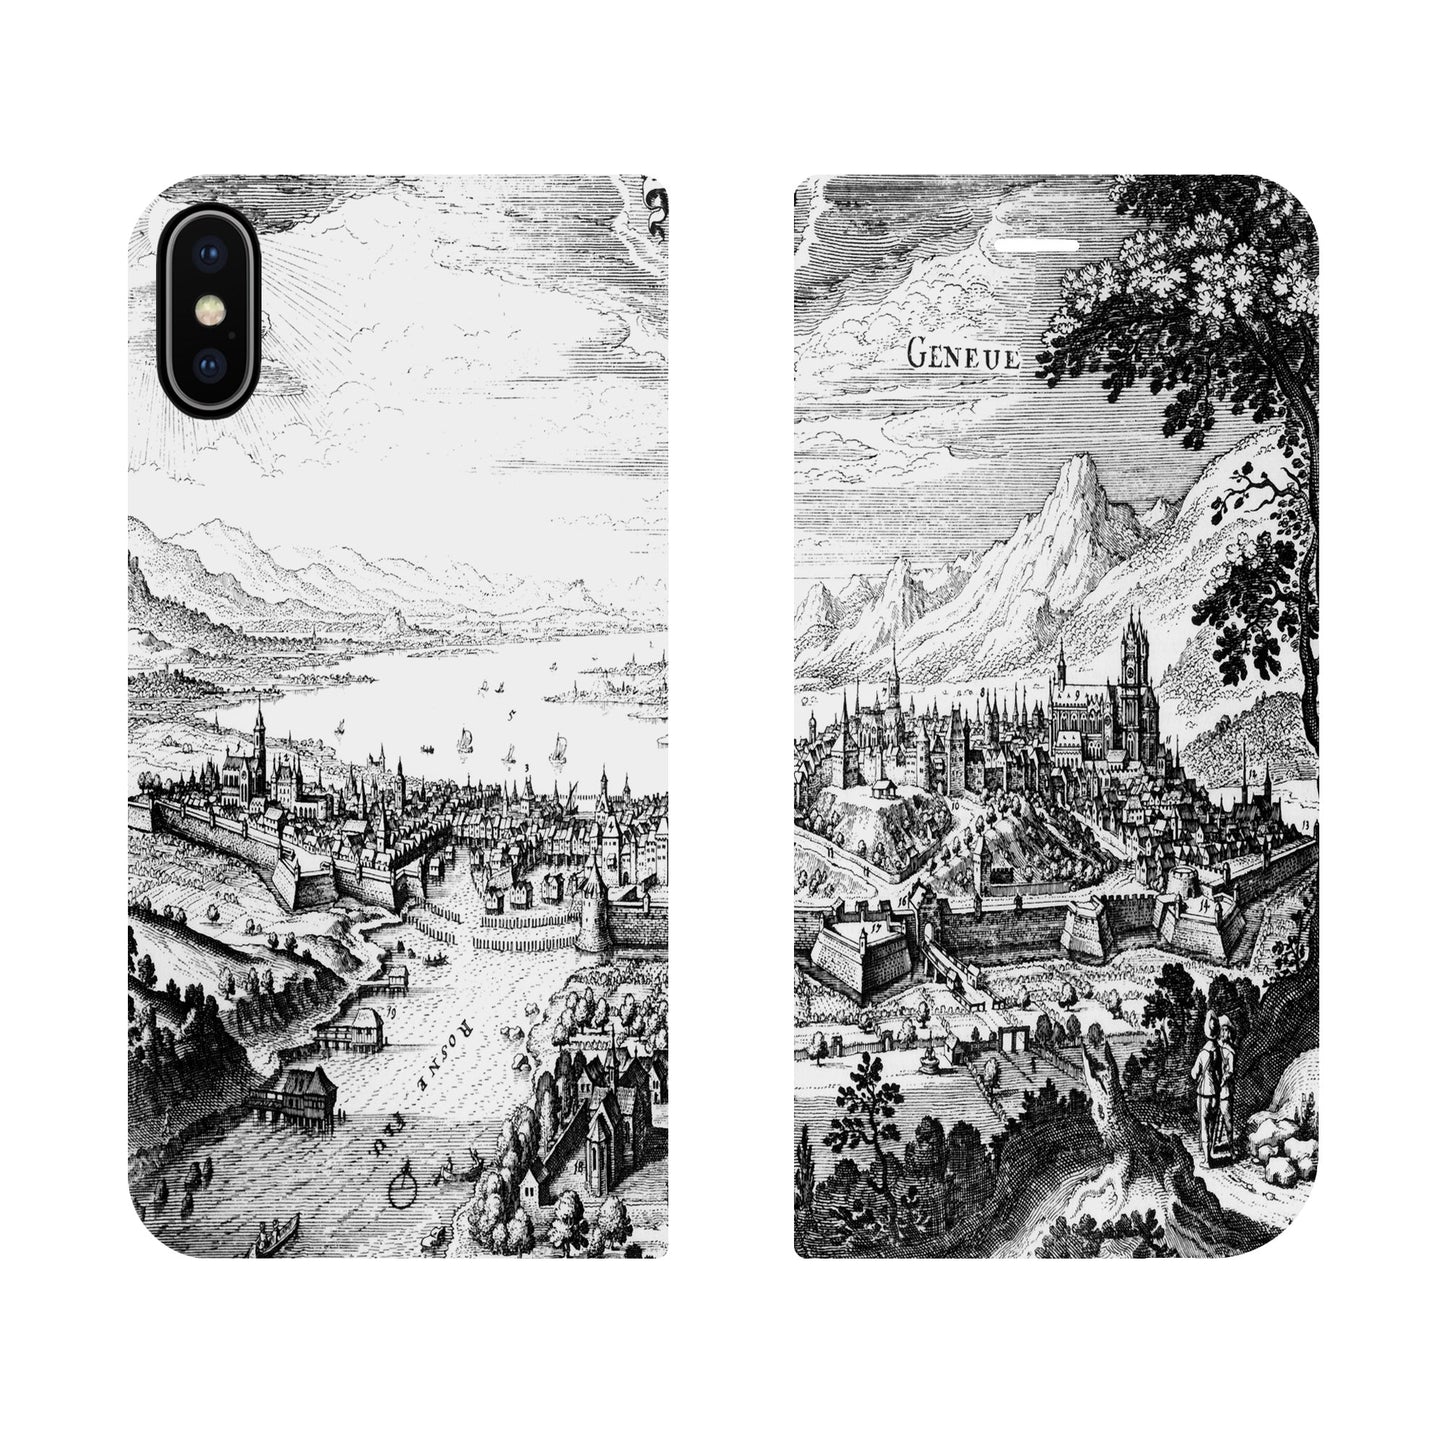 Genf Merian Panorama Case für iPhone X/XS